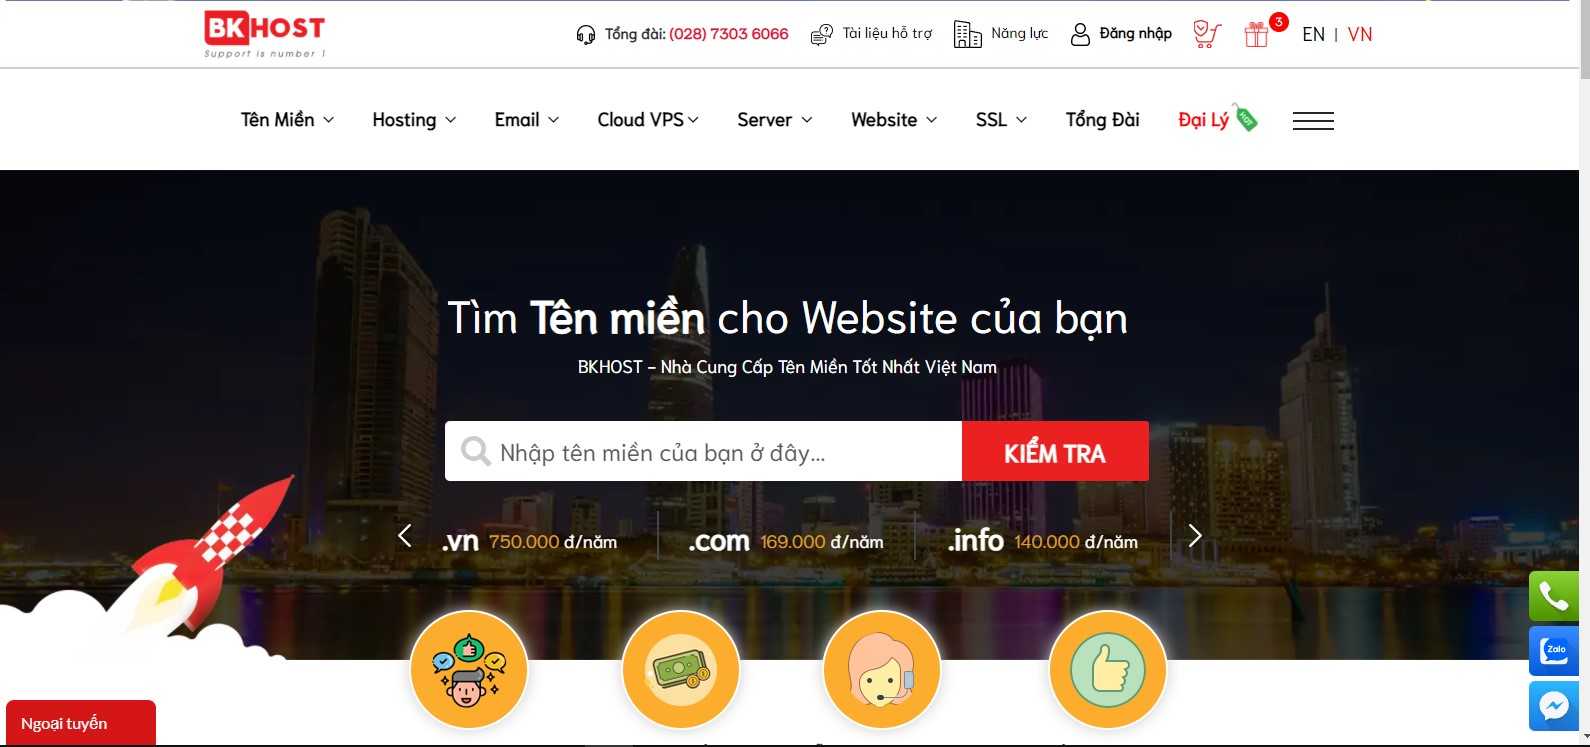 BKHOST nhà cung cấp dịch vụ hosting tại Việt Nam